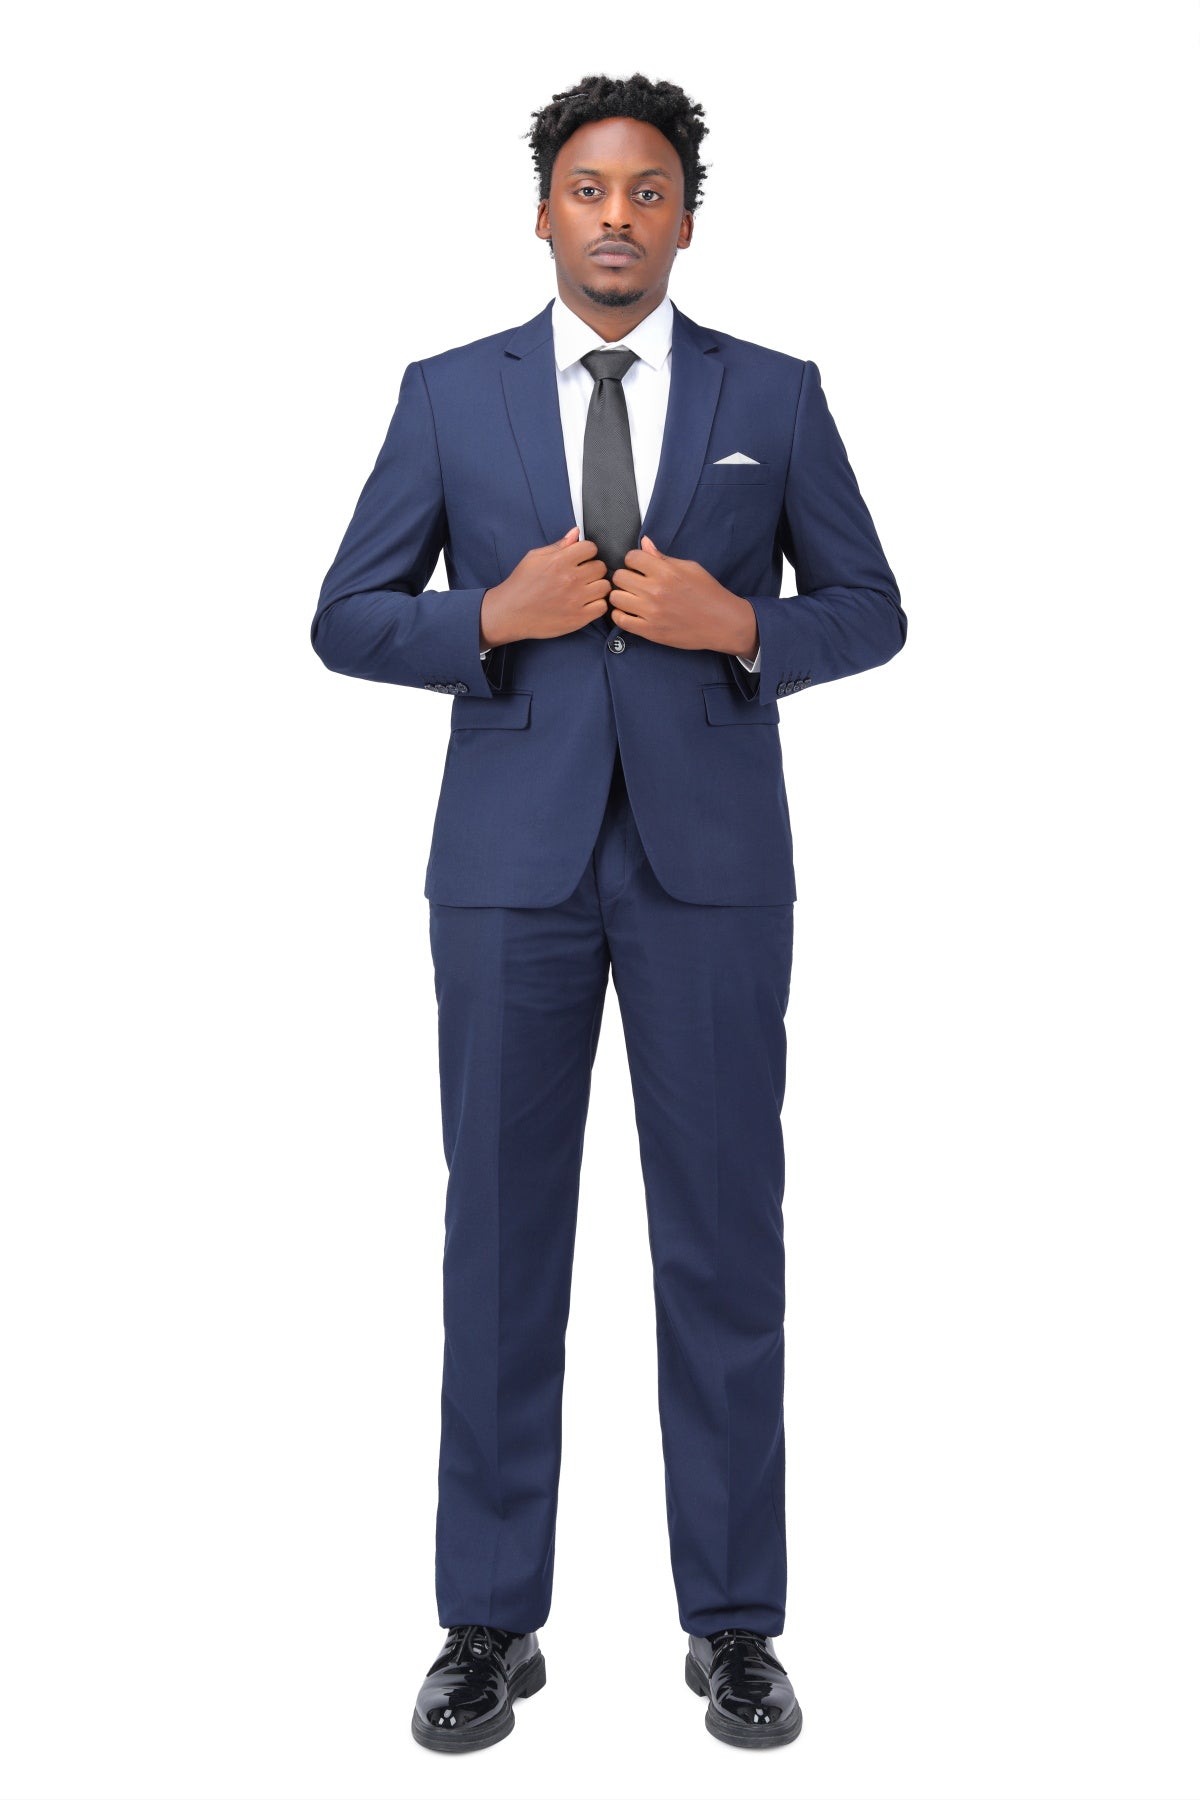 2-Piece Slim Fit Simple Designed Navy Suit